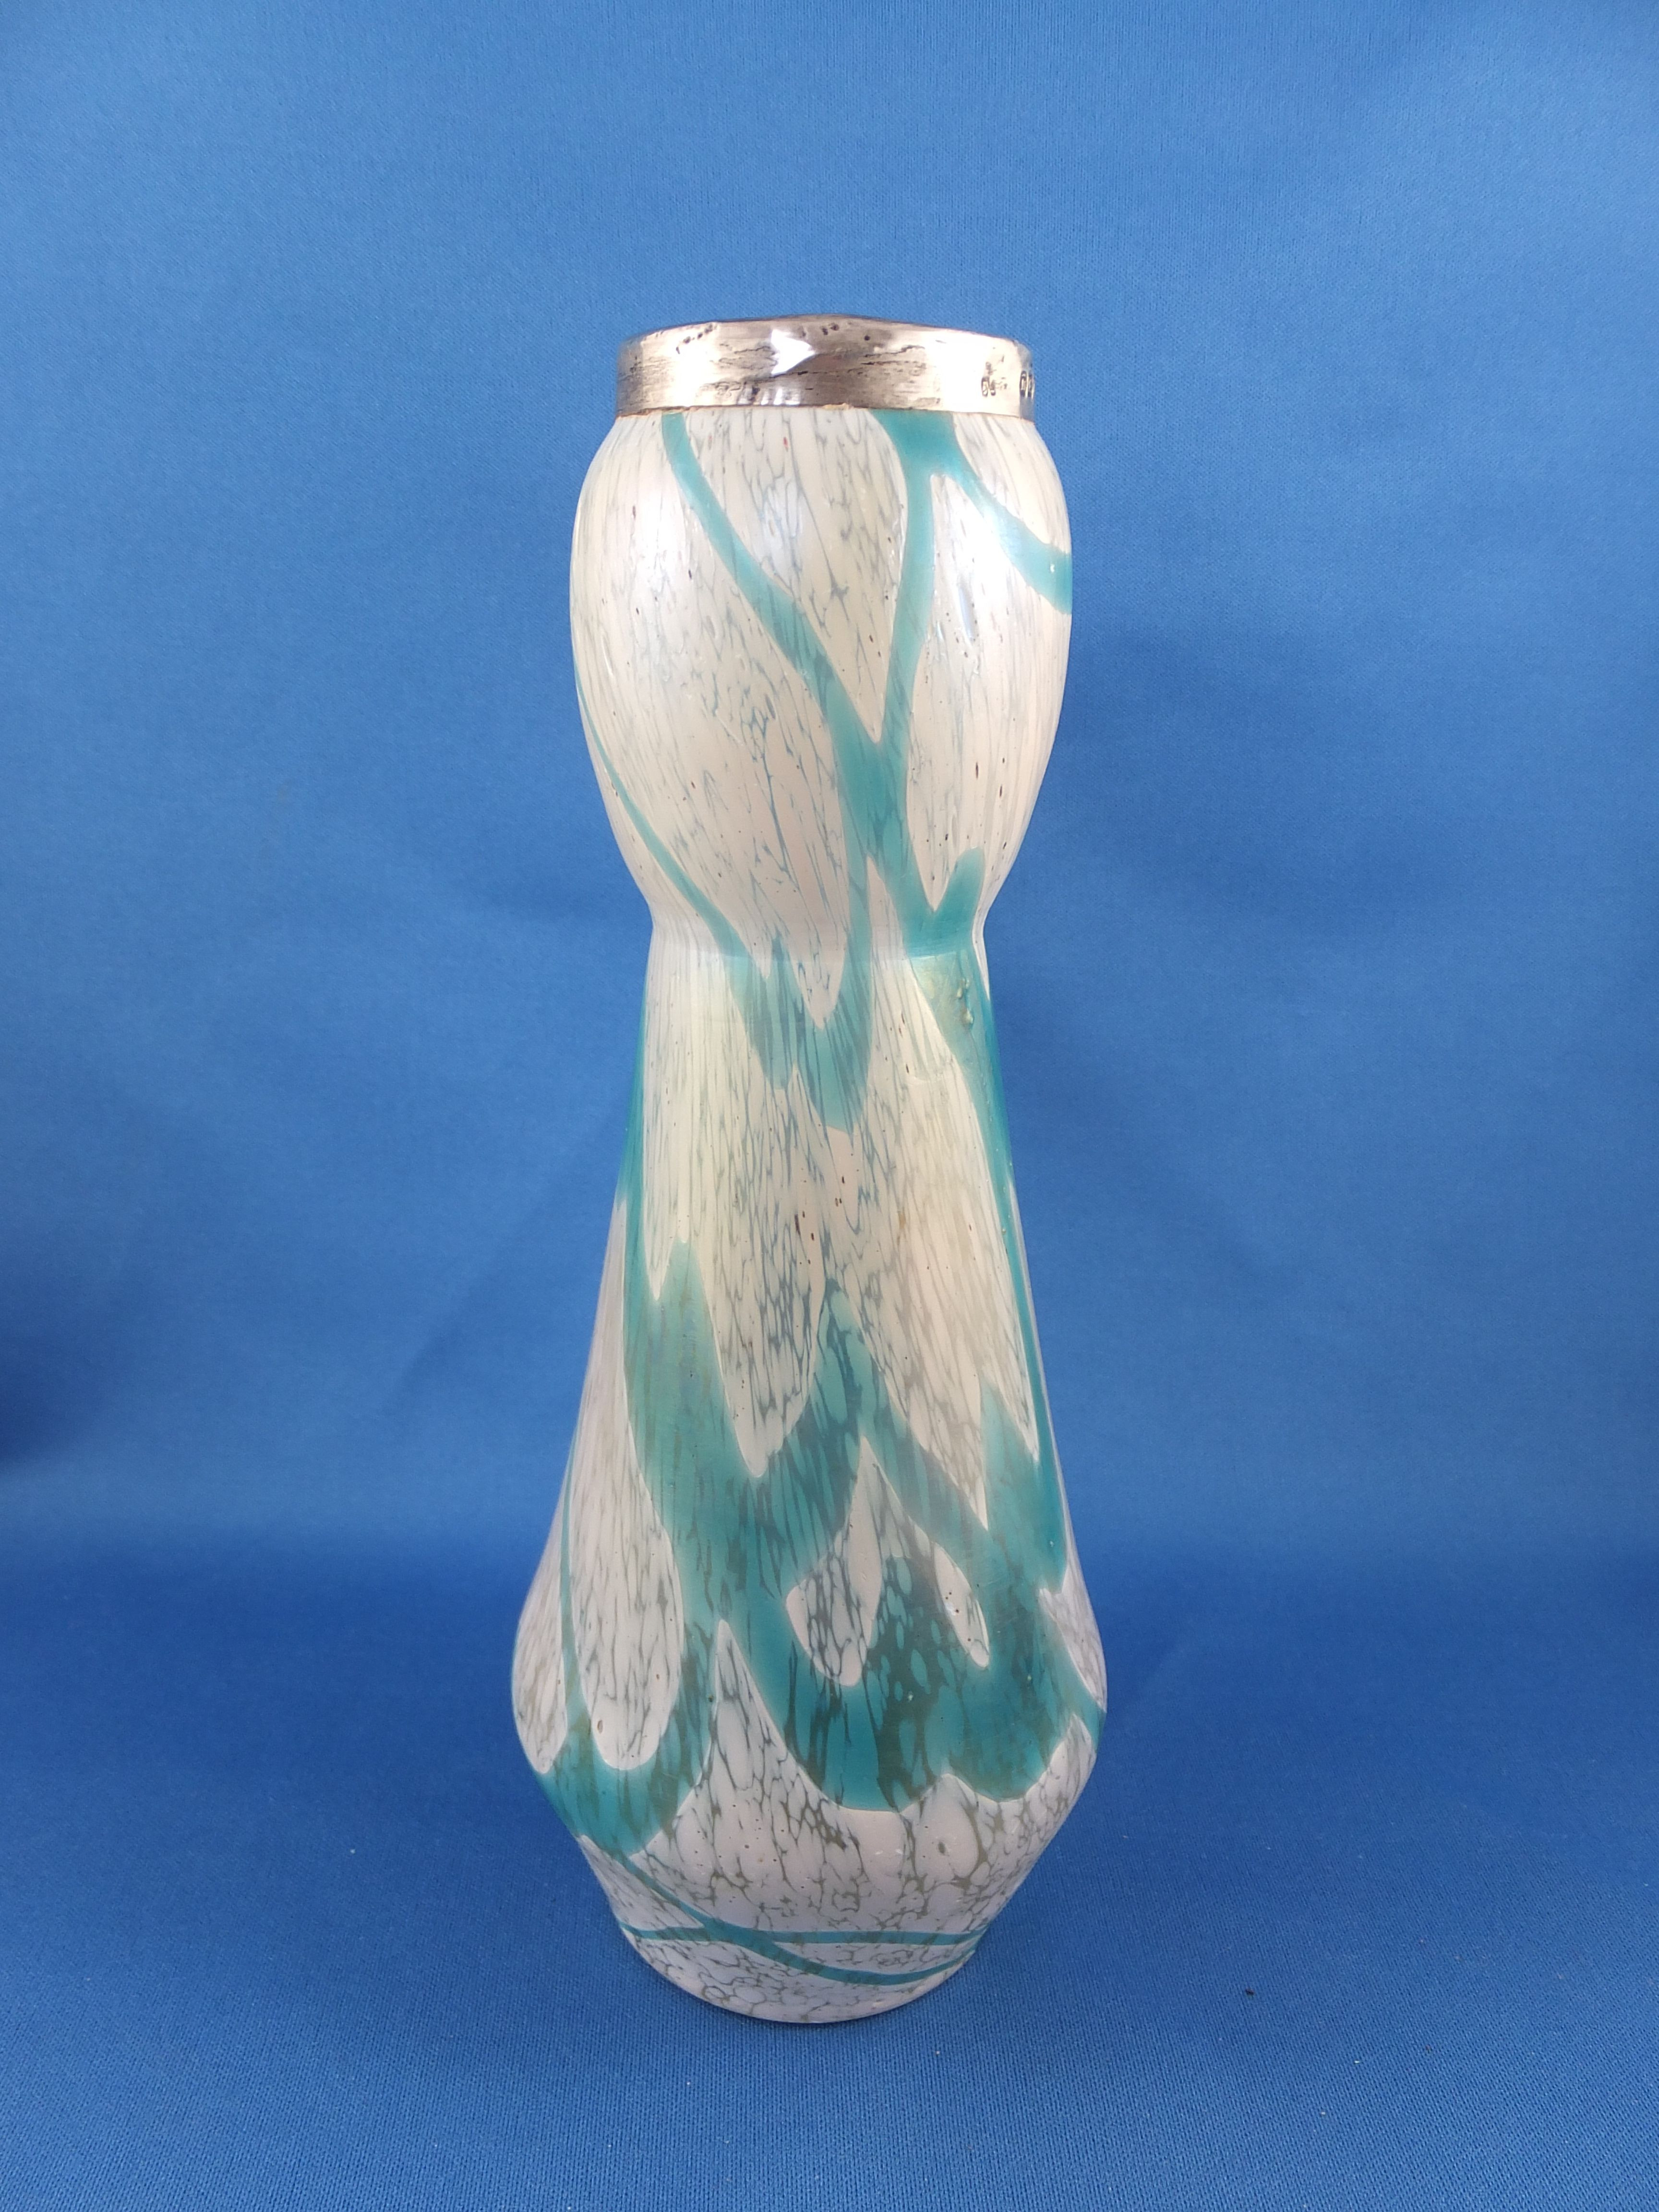 18 Ideal 6 Inch Crystal Vase 2024 free download 6 inch crystal vase of silver topped rindskopf vase my glass pinterest silver tops inside silver topped rindskopf vase